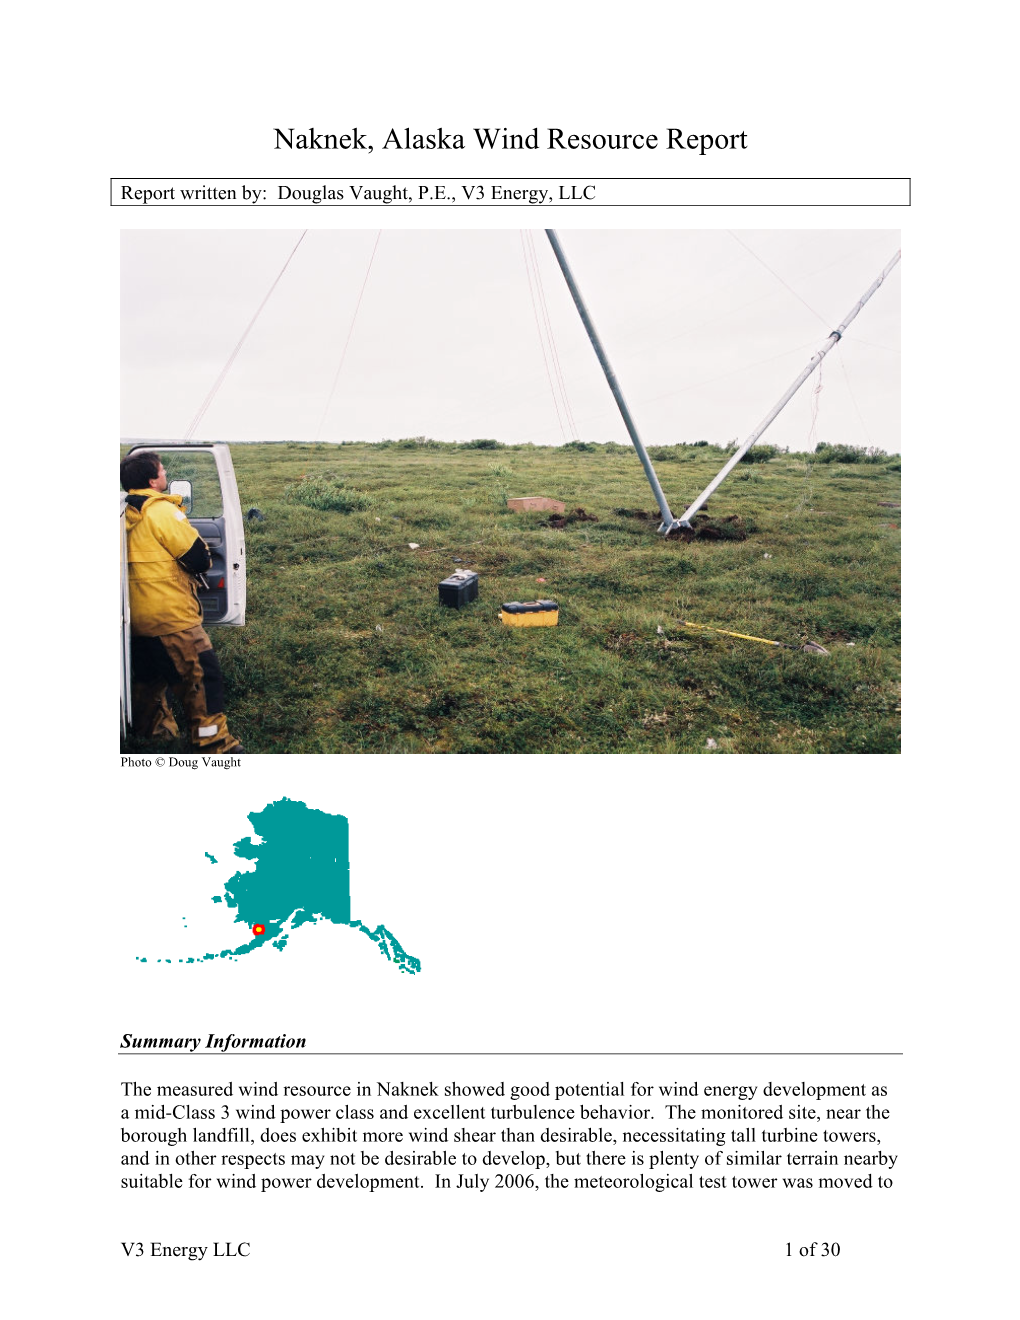 Naknek Wind Resource Report